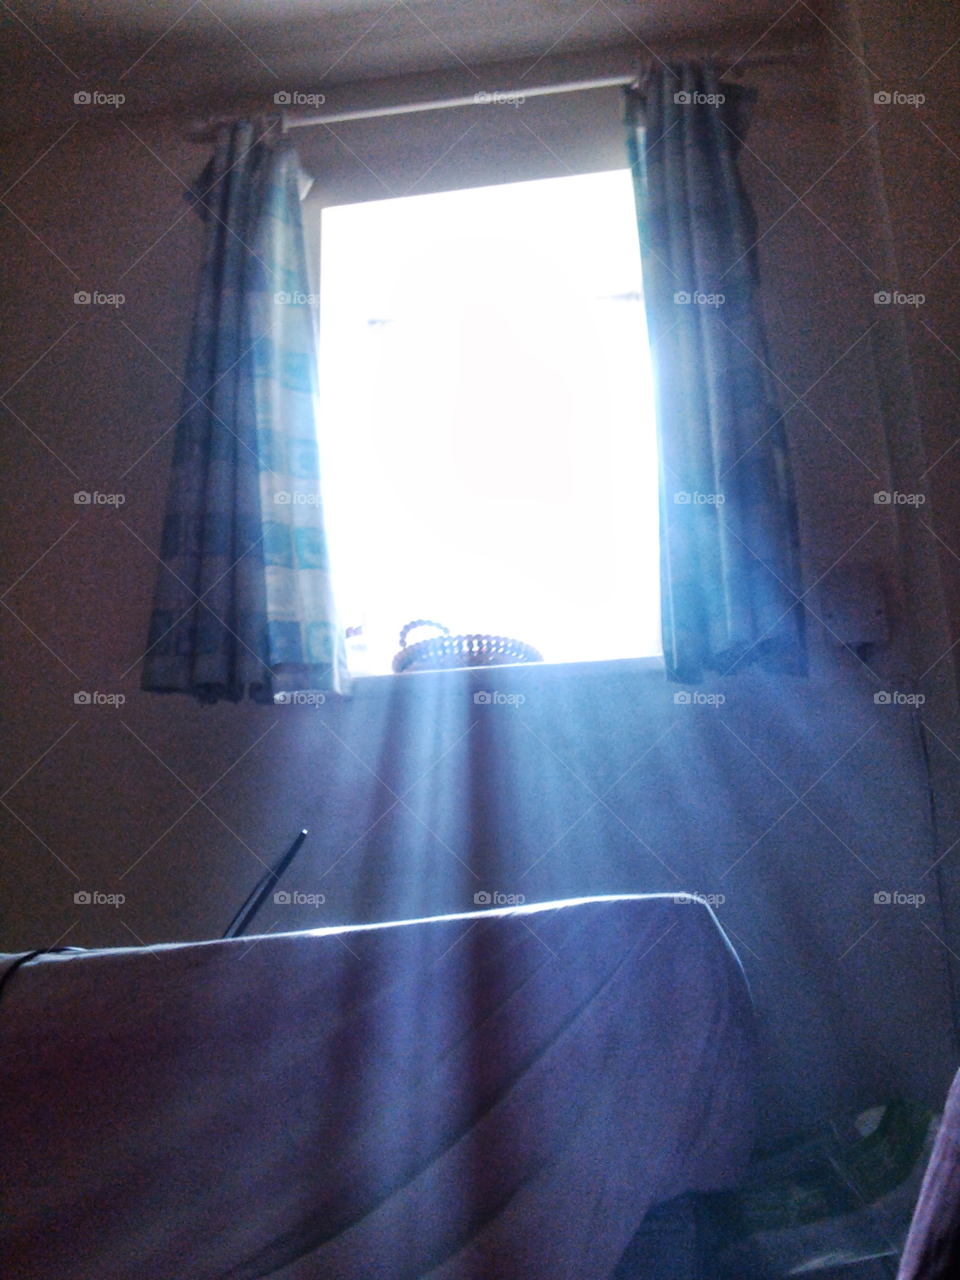 Sunbeams through a basement window